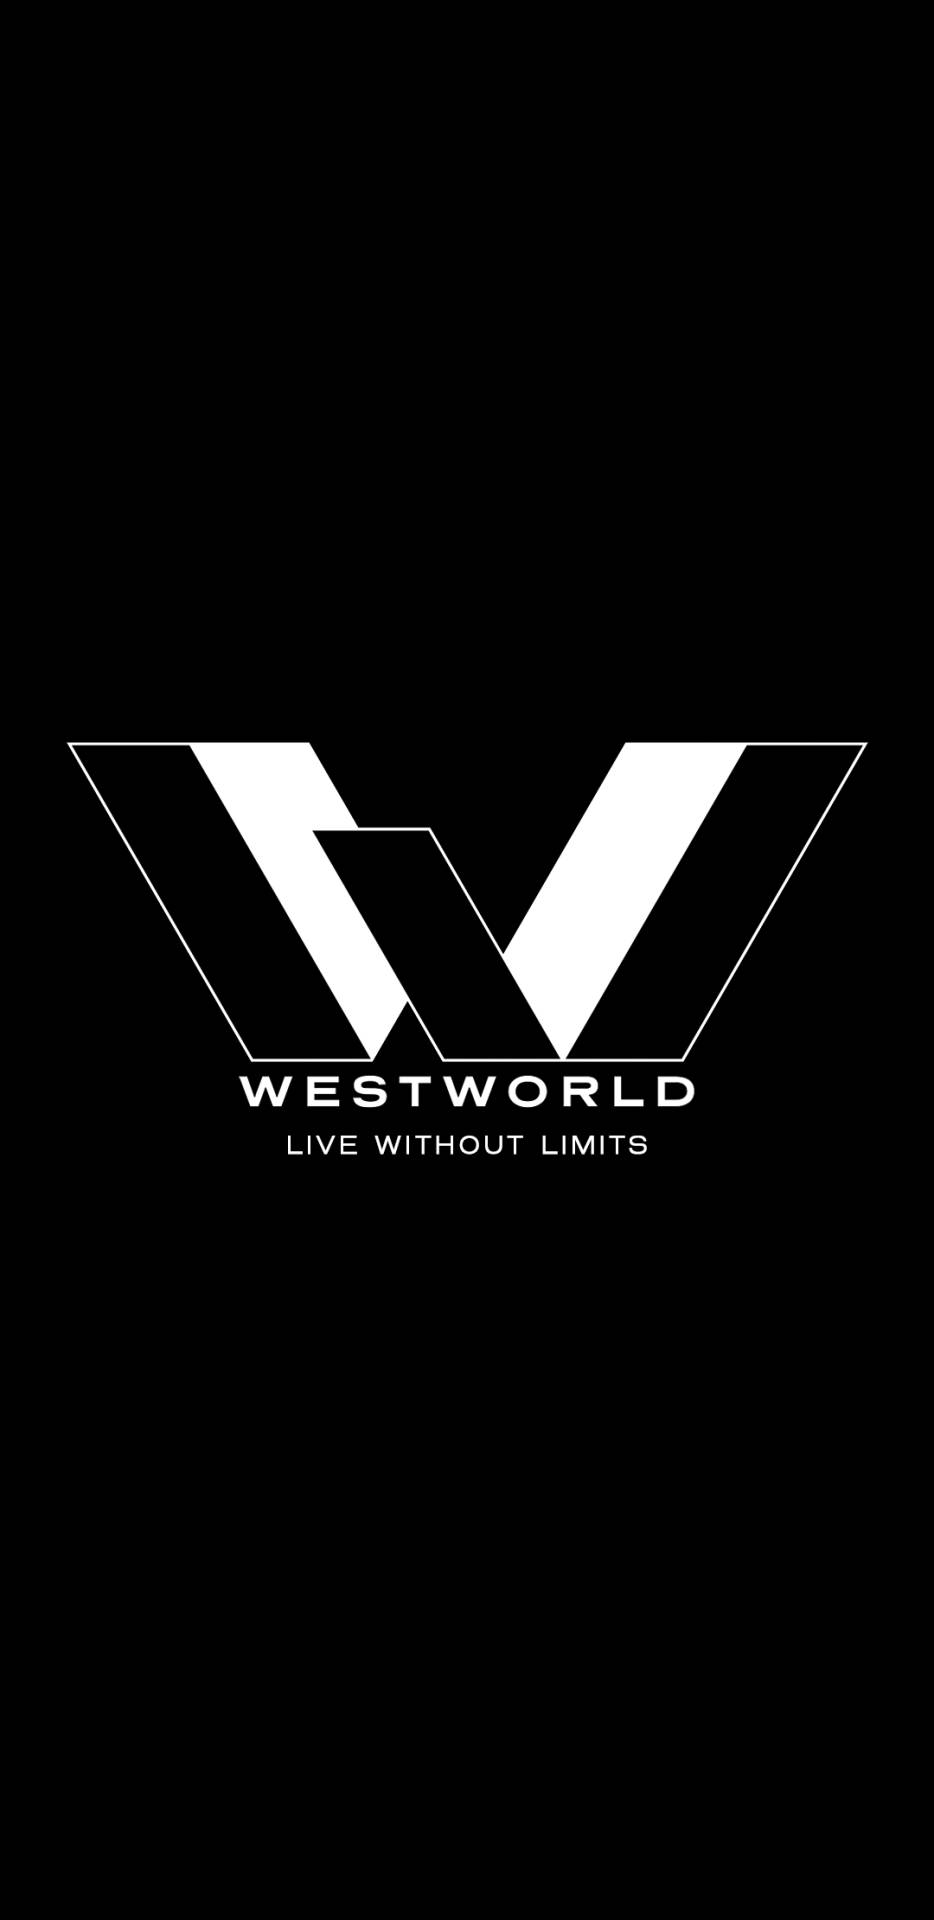 Westworldlebe Grenzenlos Logo Wallpaper